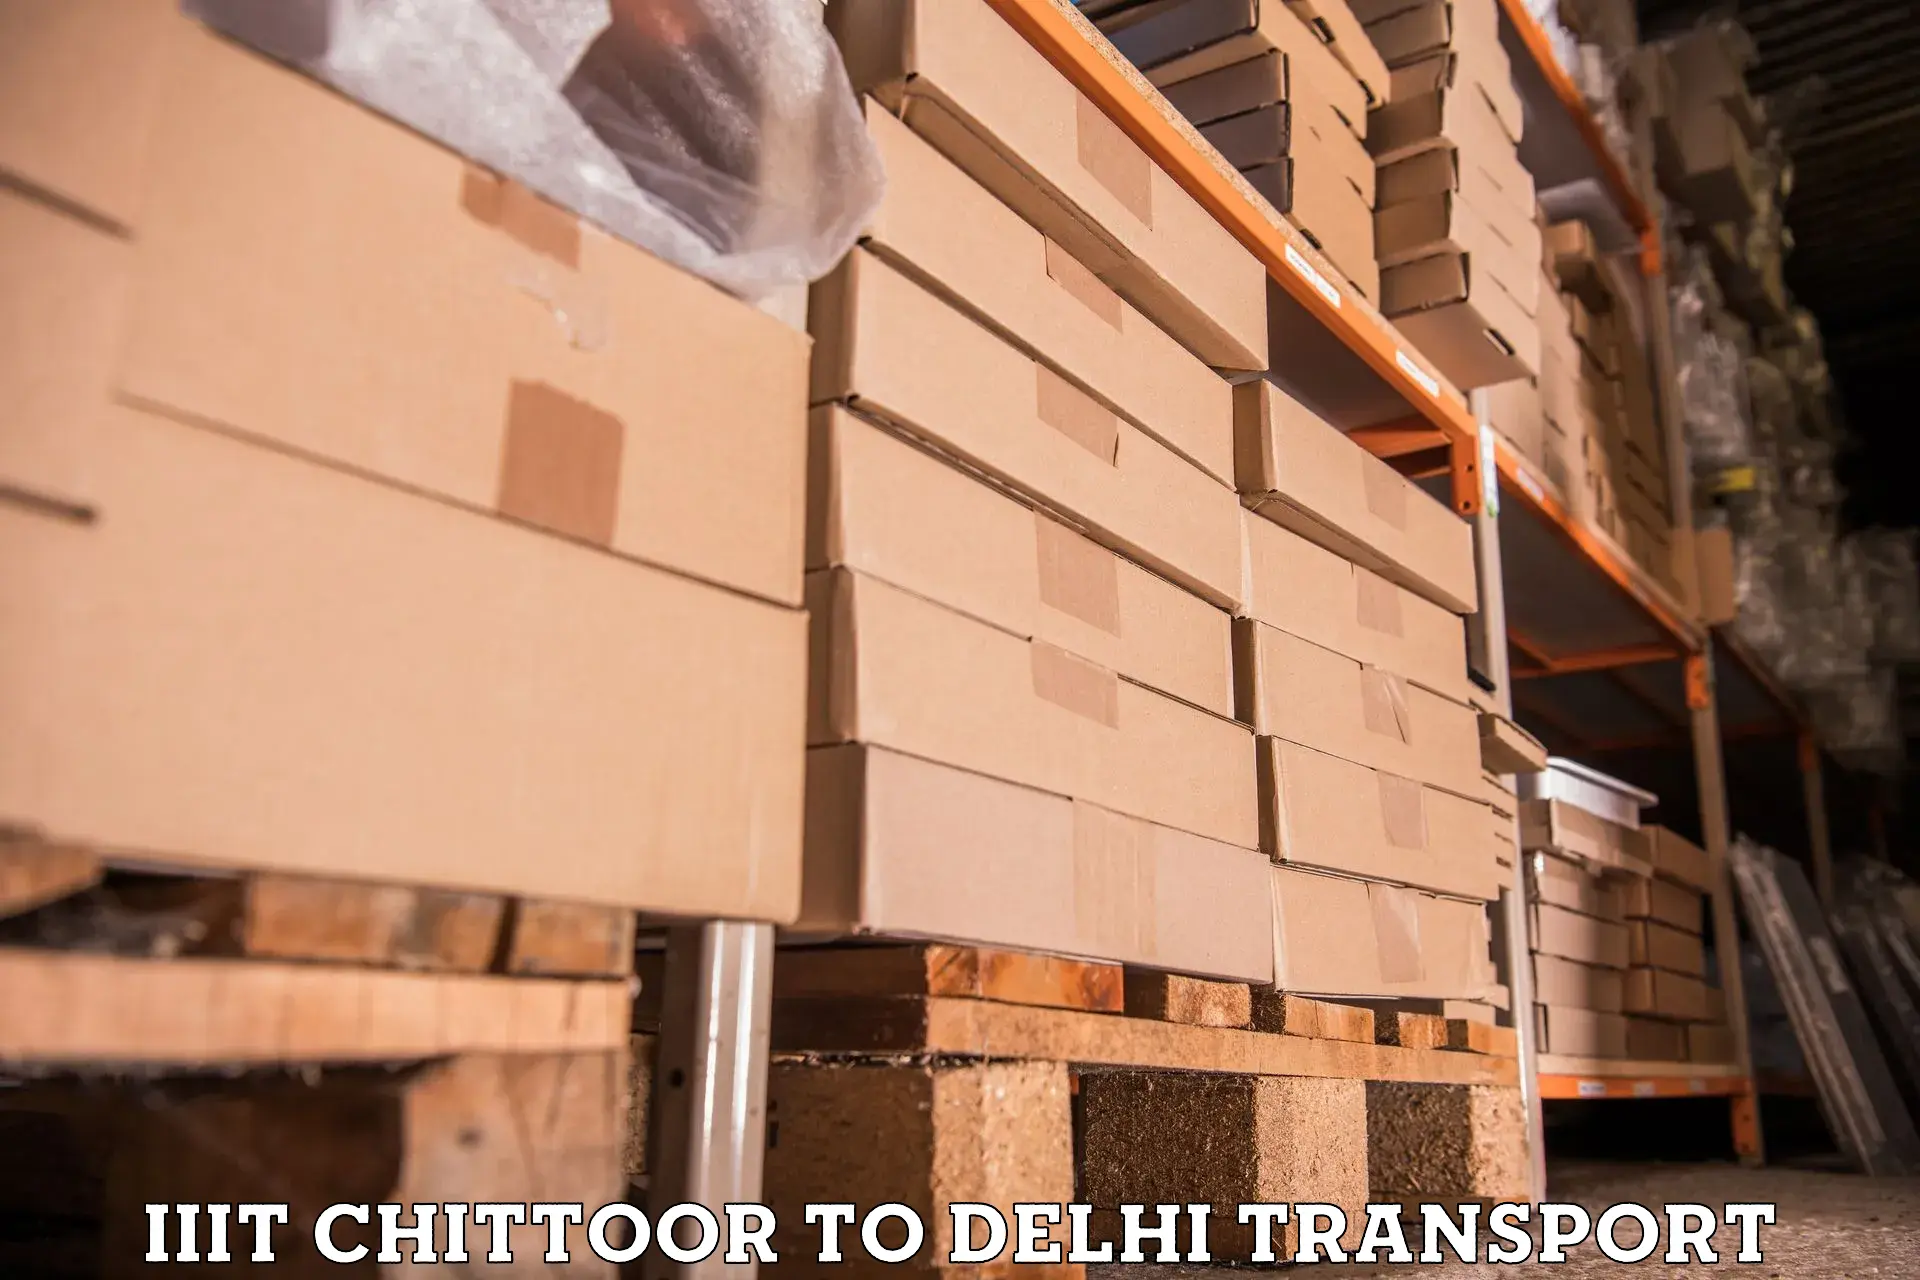 Container transport service IIIT Chittoor to Kalkaji